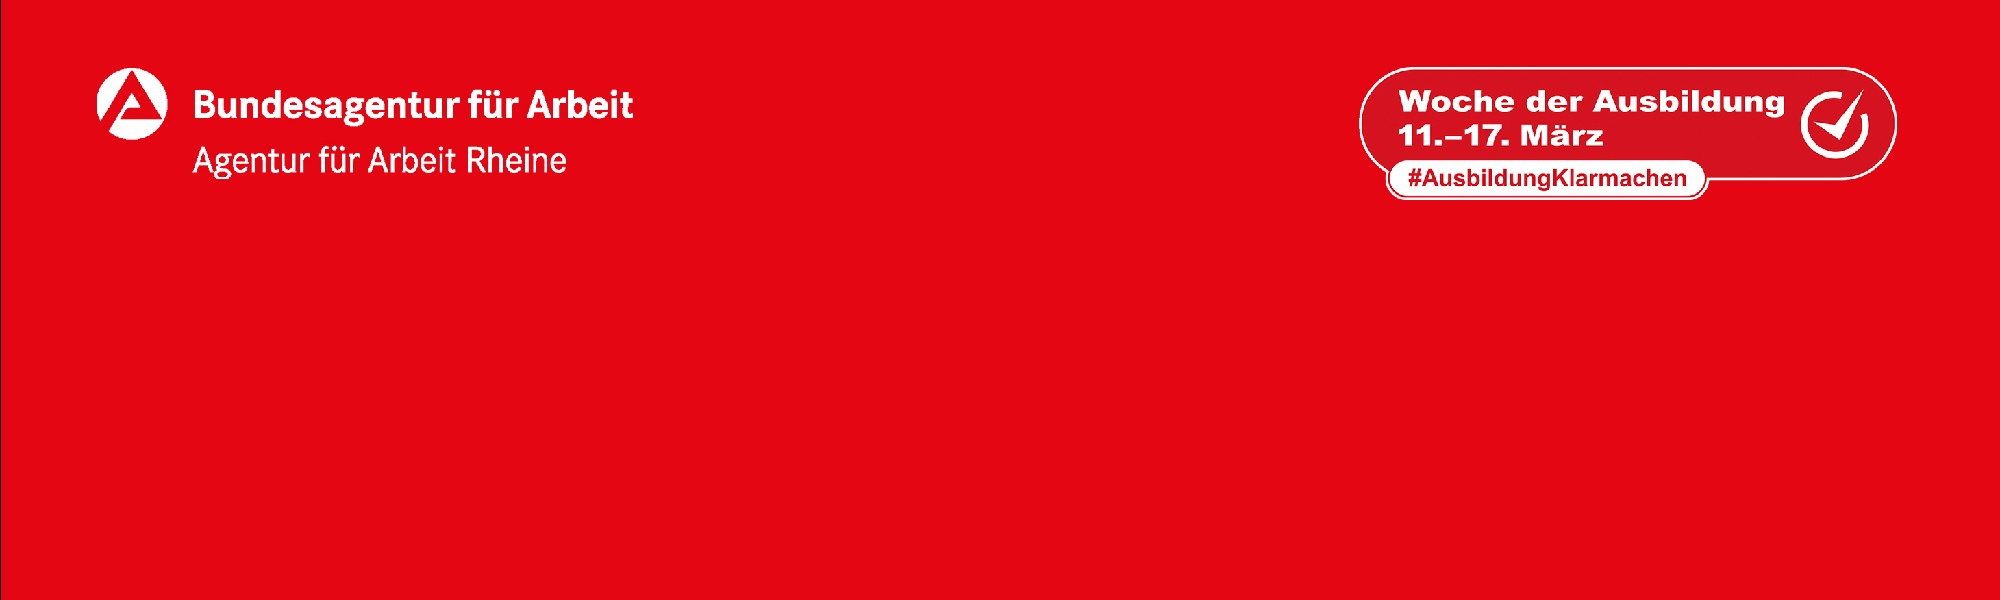 Logo der Agentur für Arbeit Rheine auf rotem Hintergrund